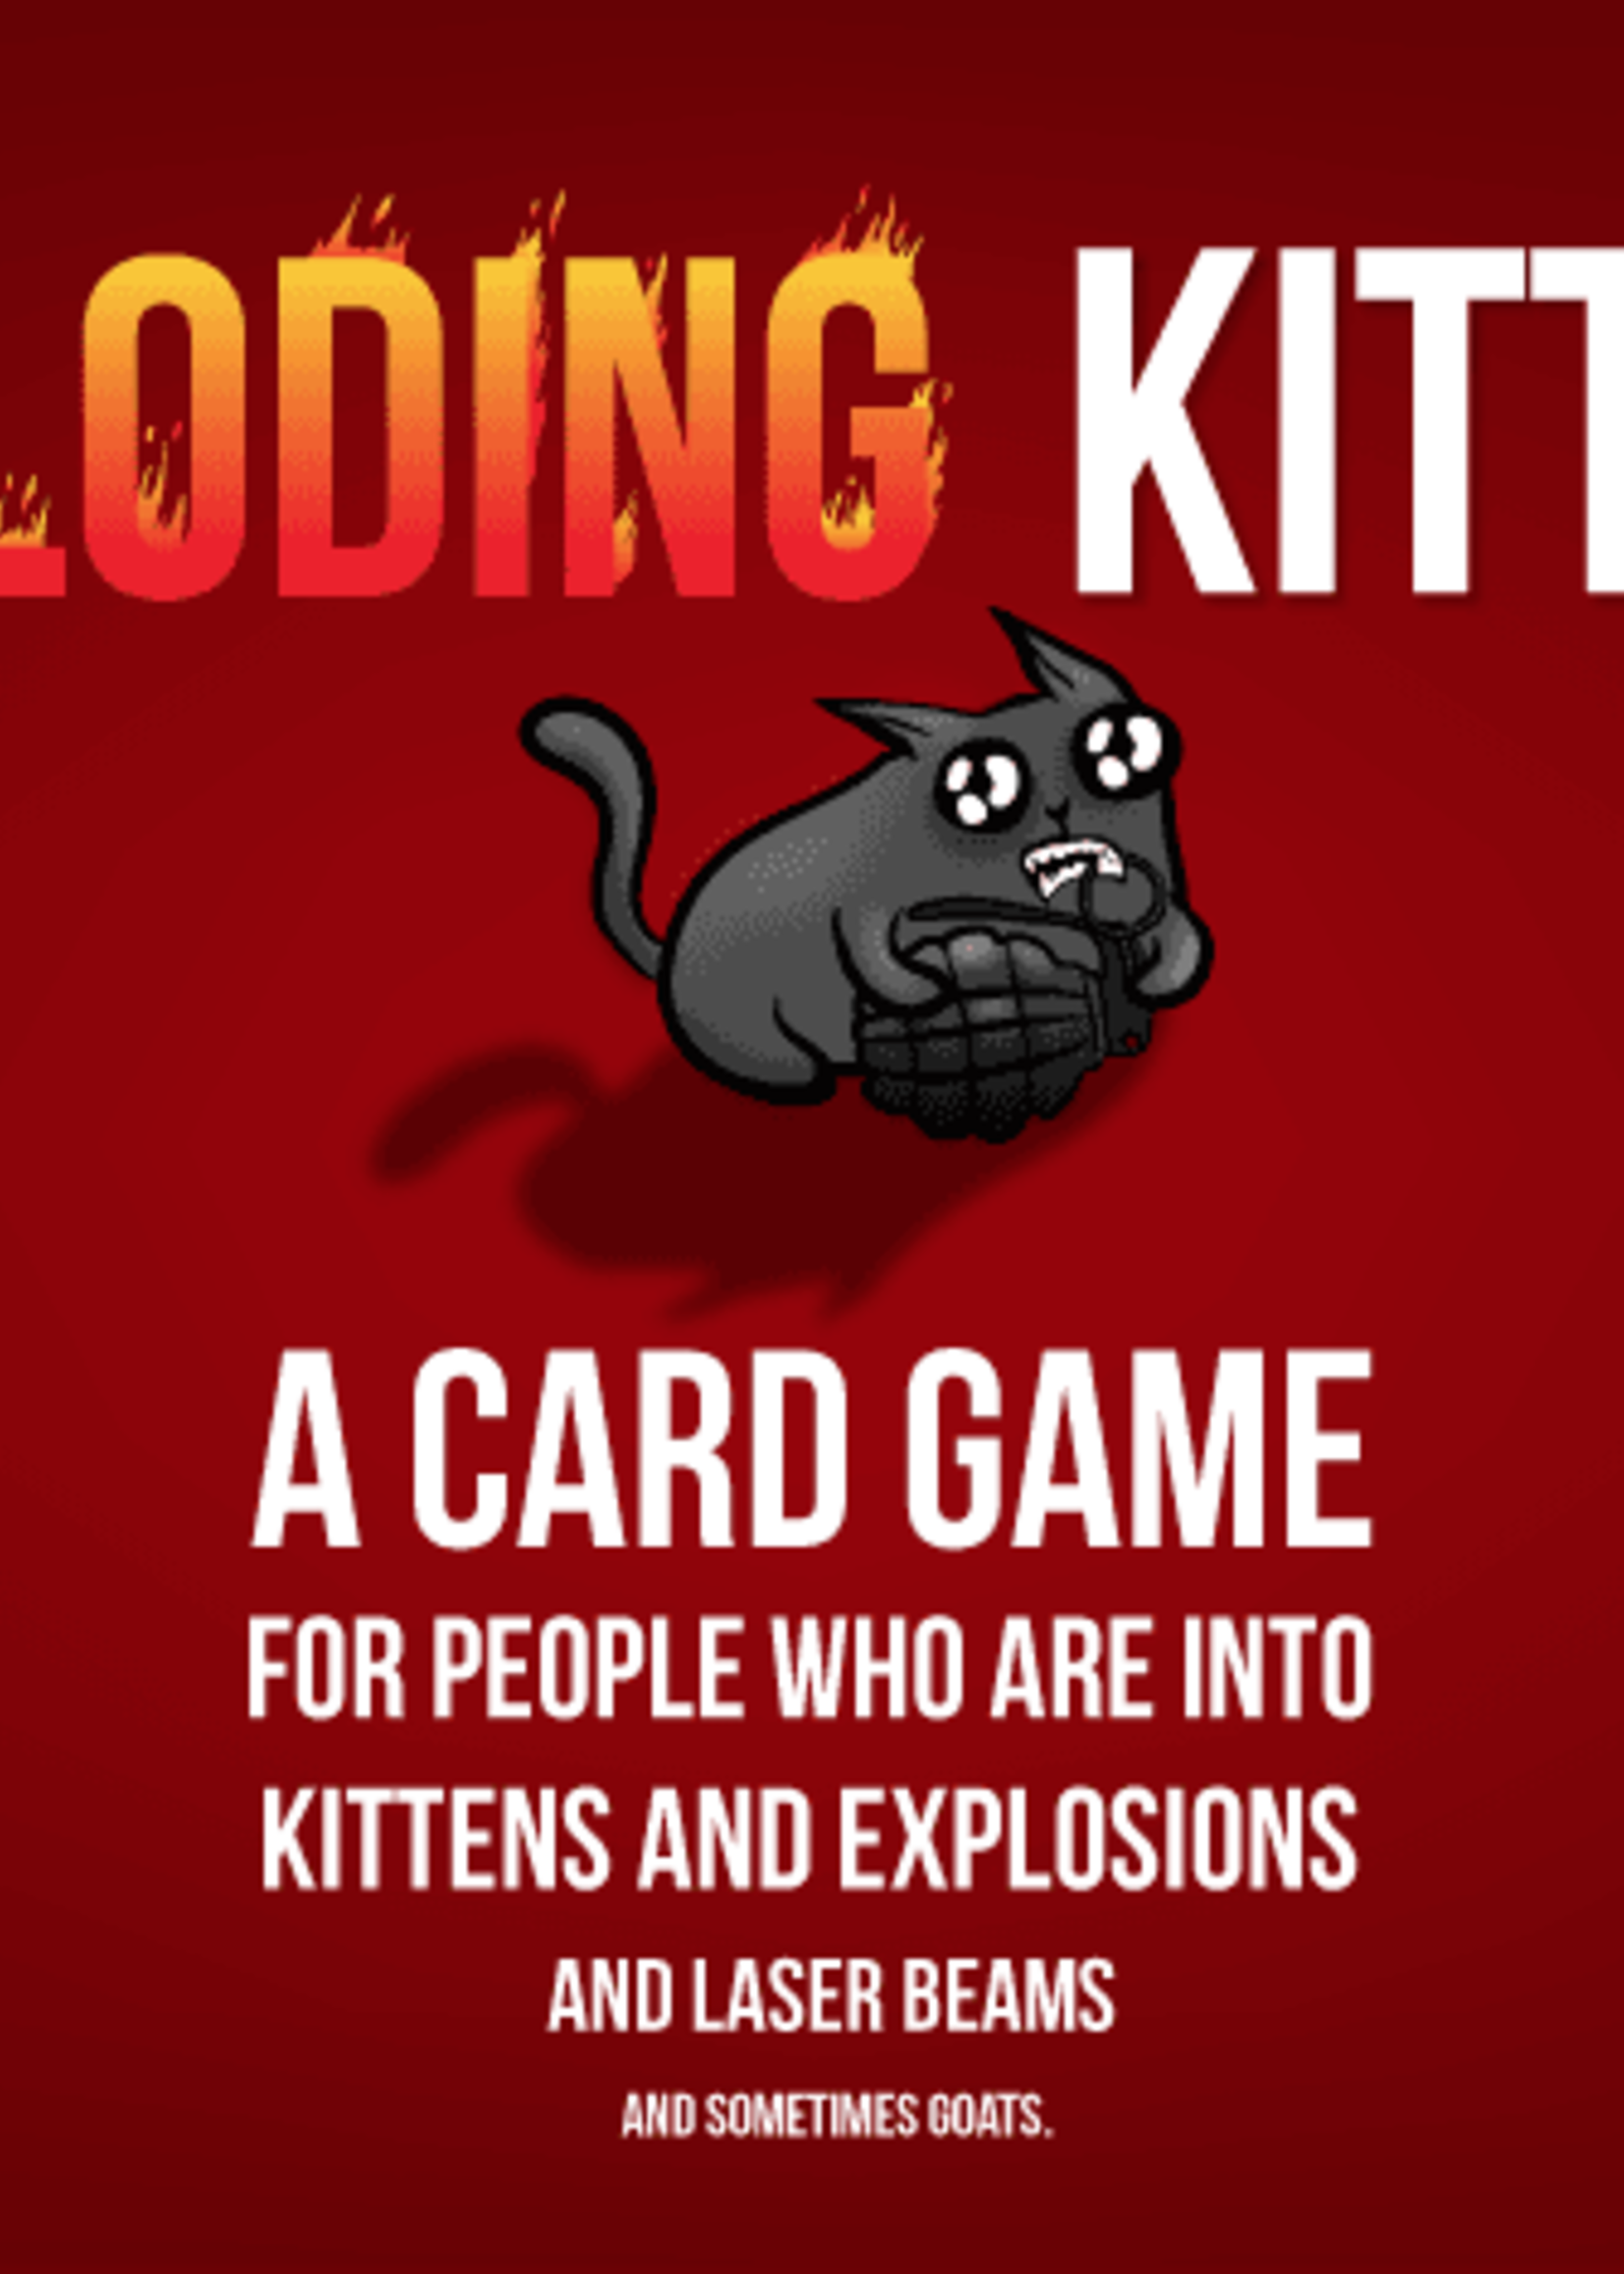 Exploding Kittens Exploding Kittens: Original Edition